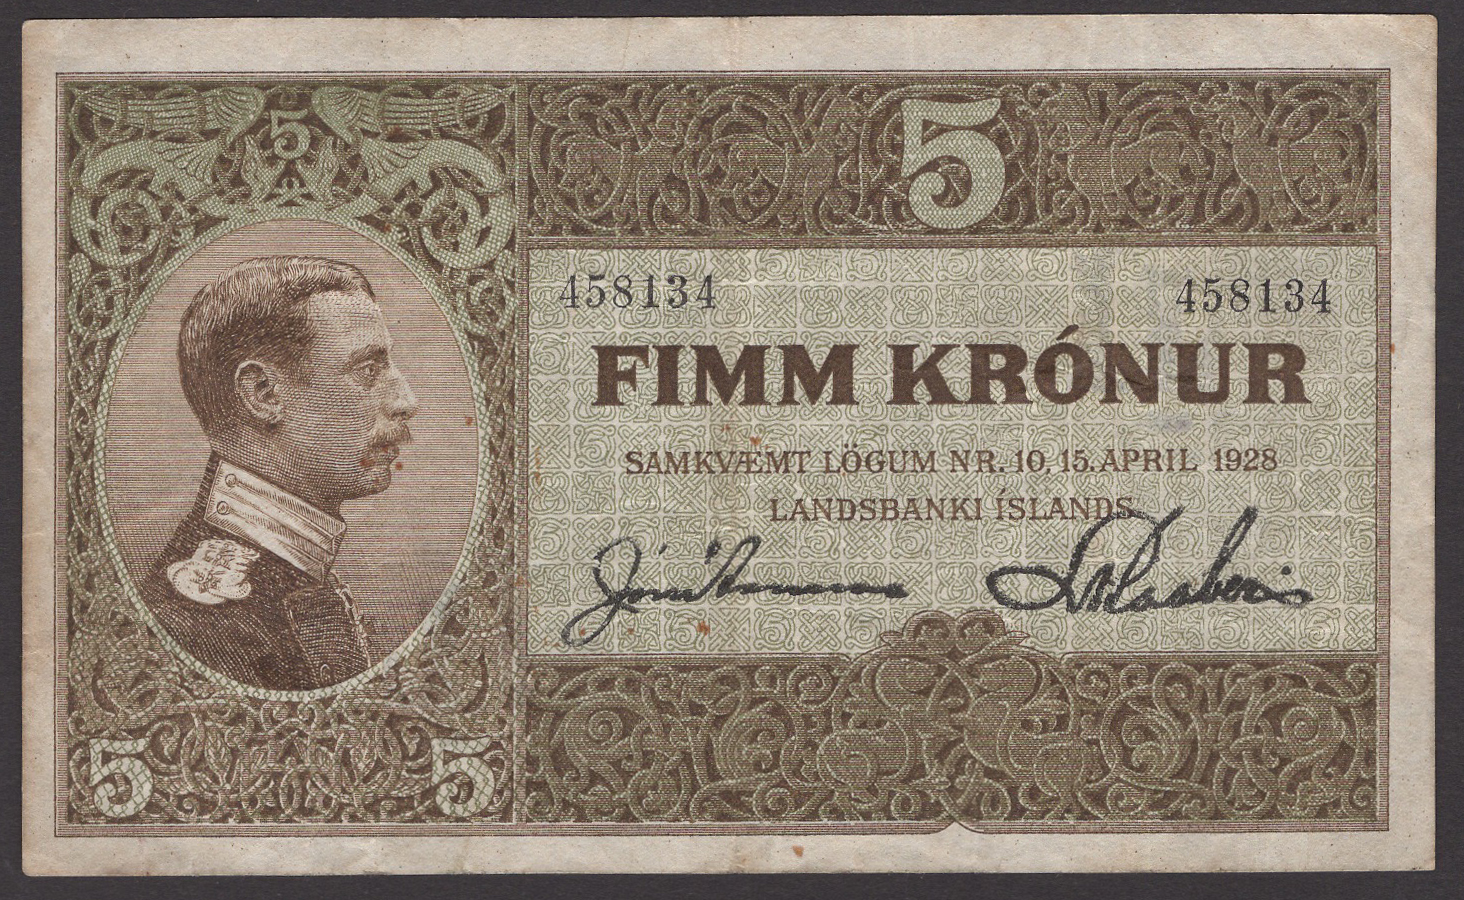 Landsbanki Islands, 5 Kronur, 15 April 1928, serial number 458134, Arnason and Kaaber...